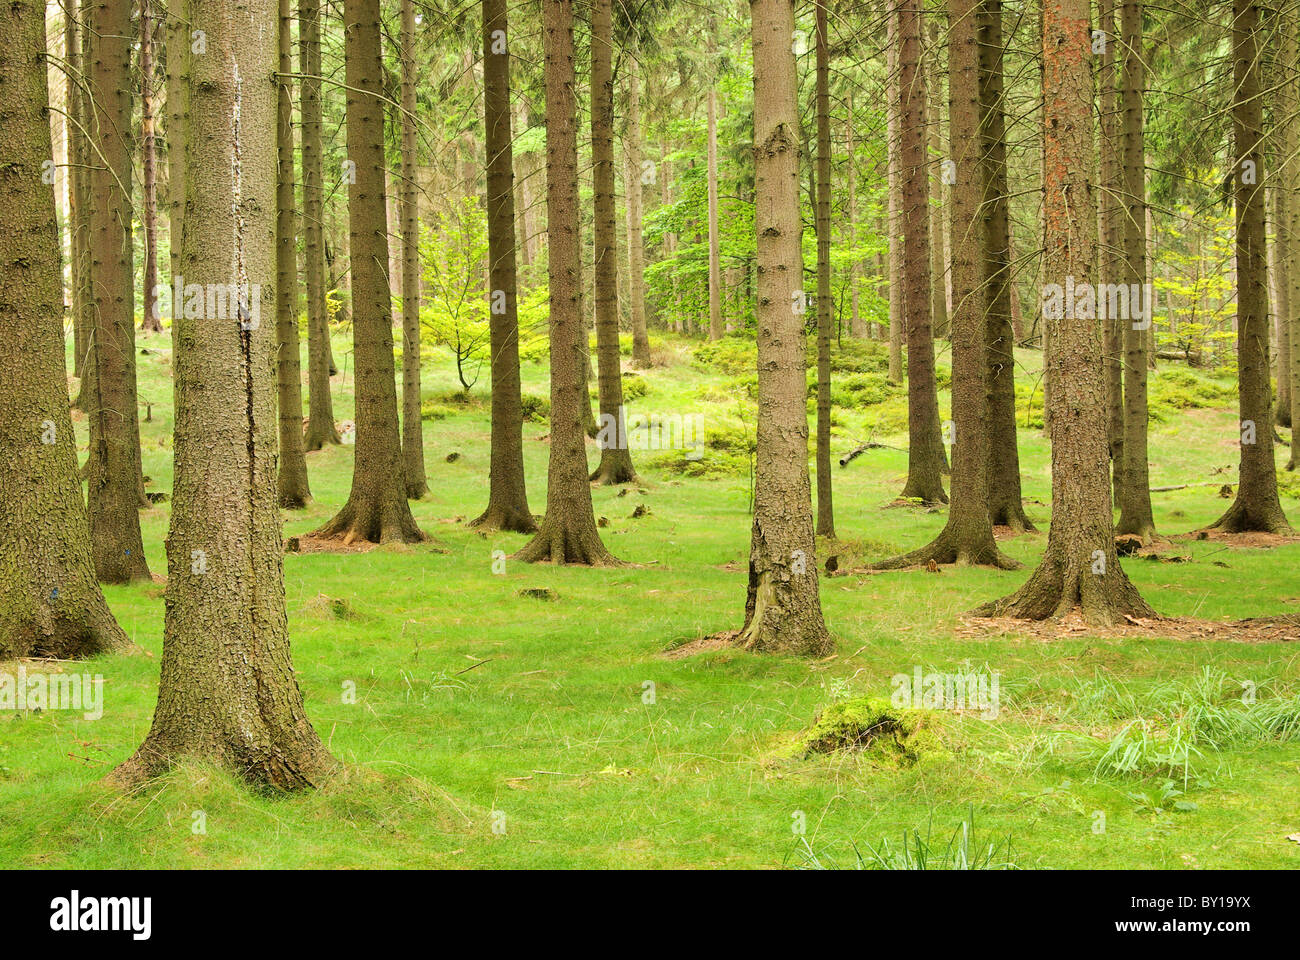 Fichtenwald - spruce forest 05 Stock Photo